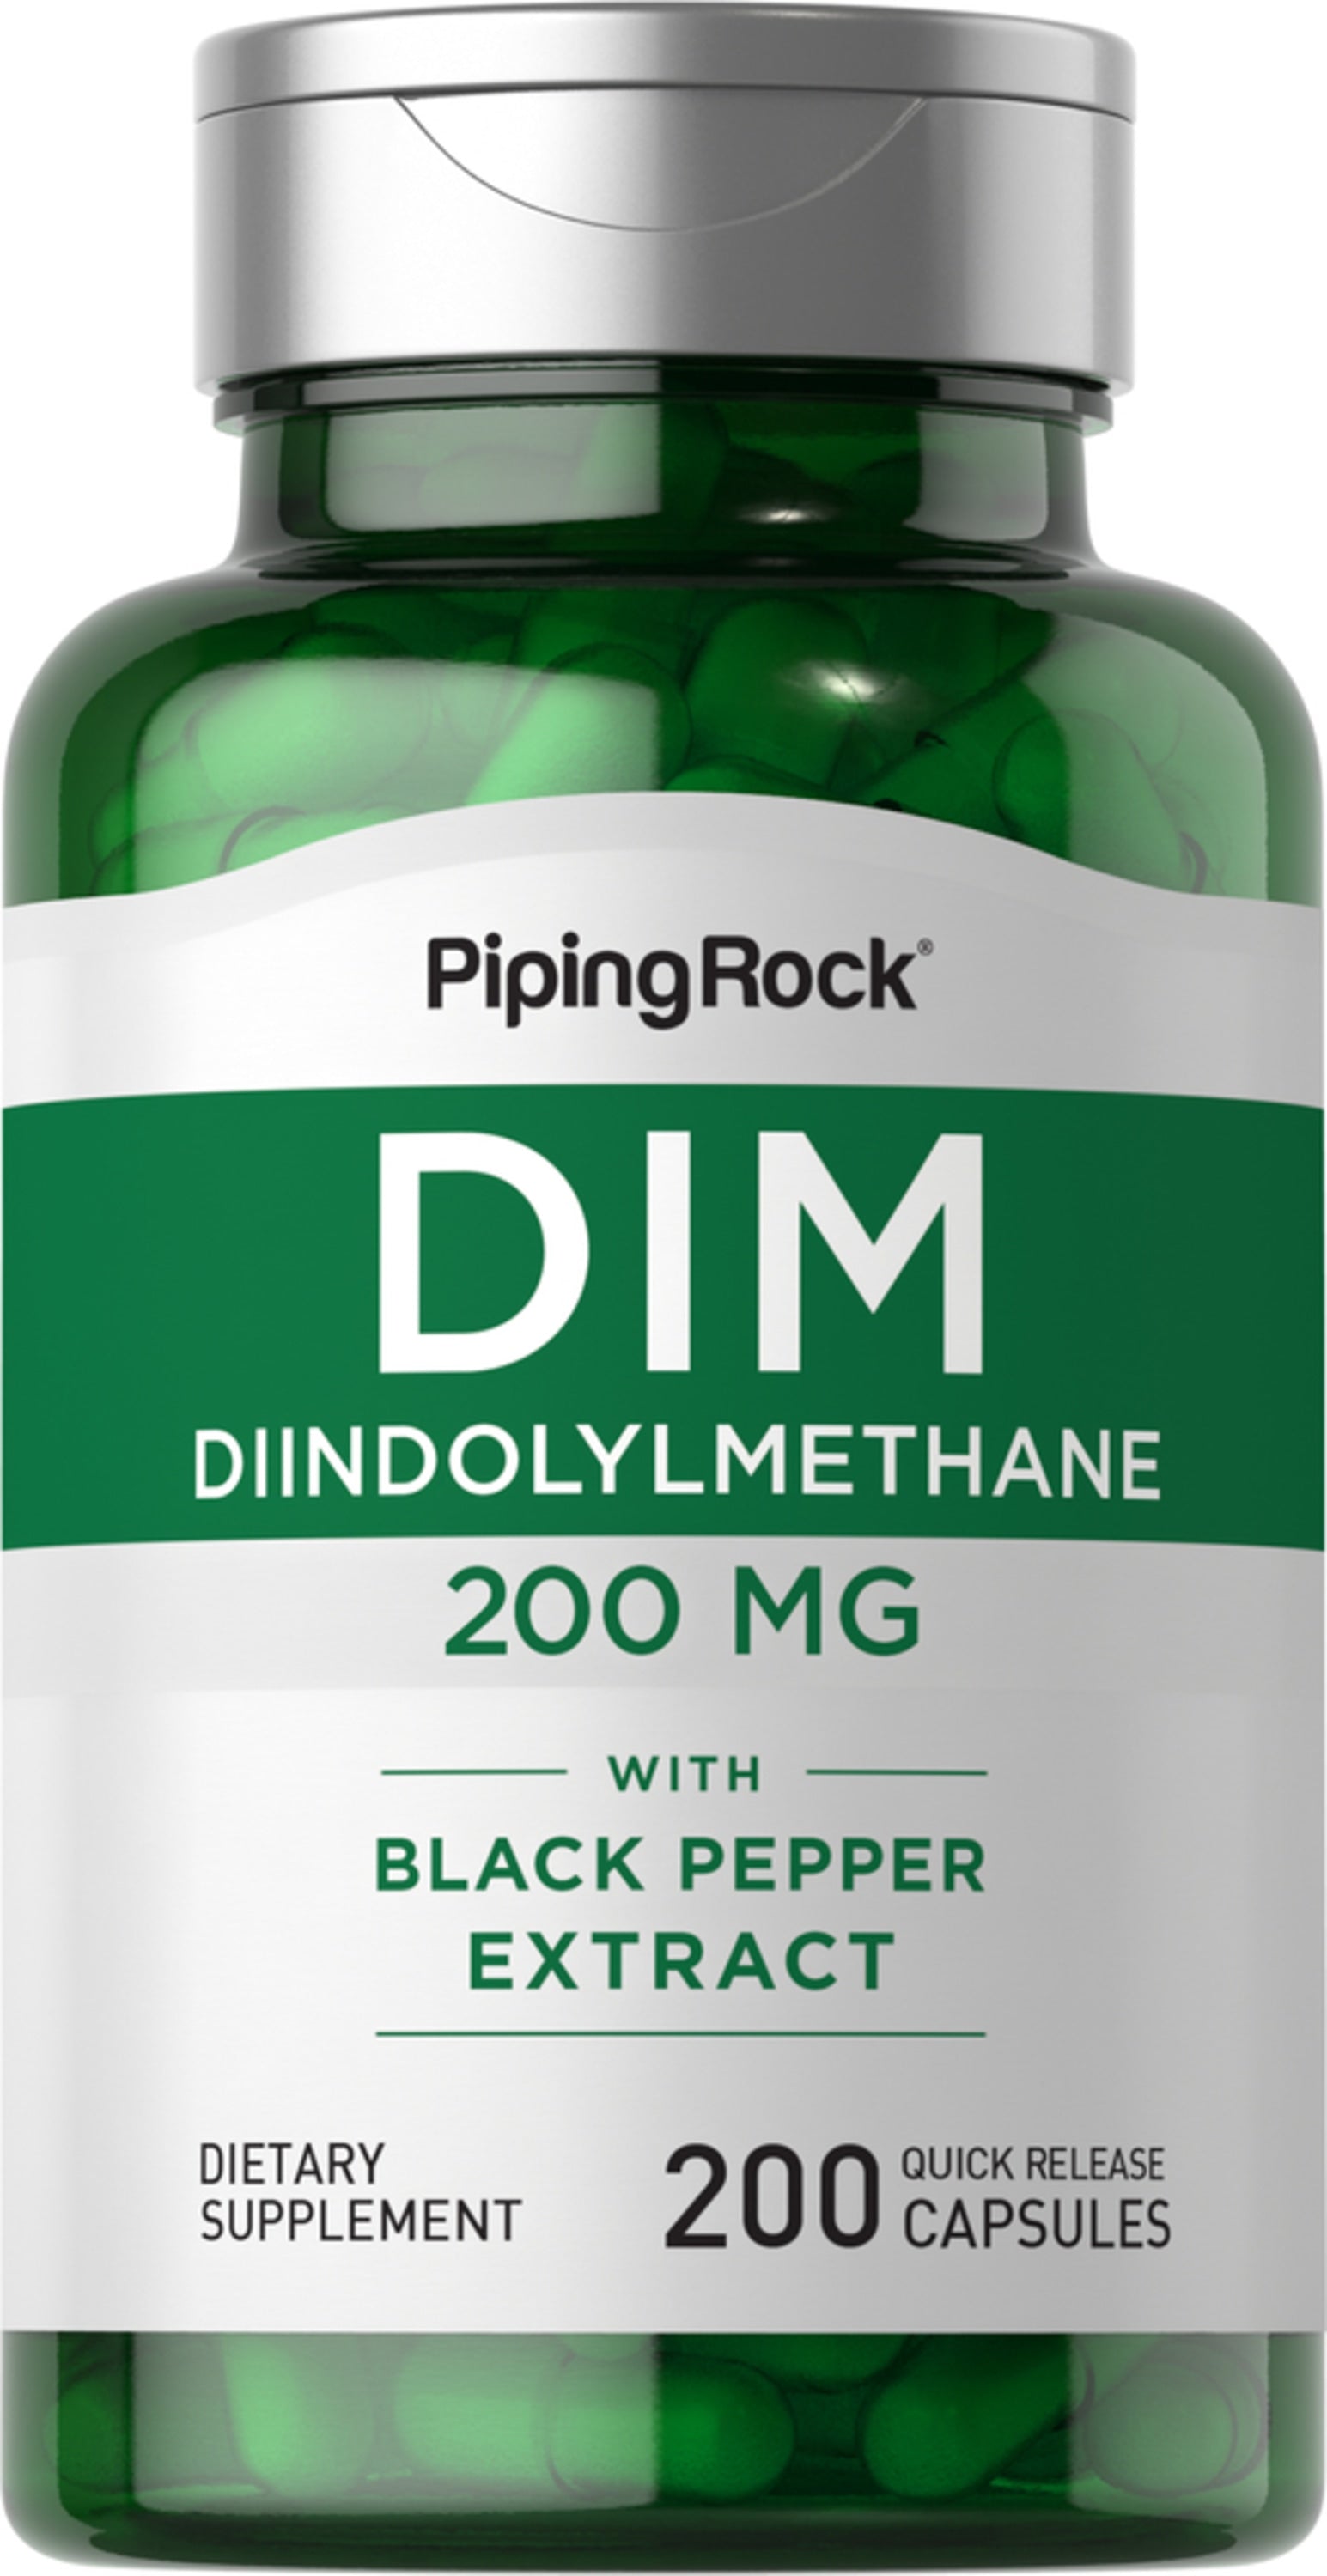 DIM (Diindolylmethane), 200 mg, 200 Quick Release Capsules